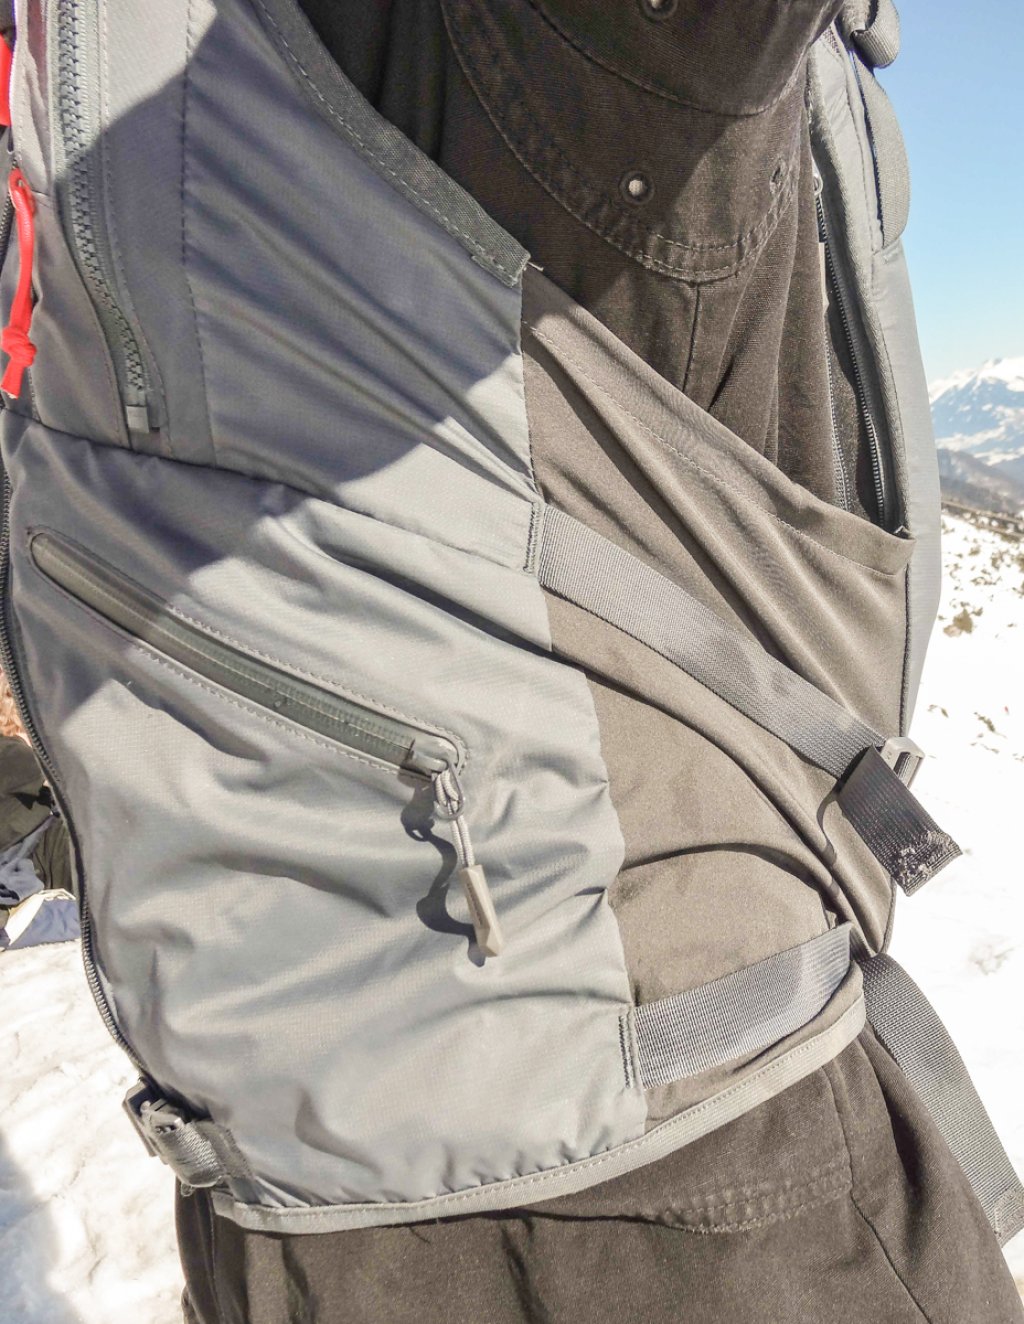 Mammut Alyeska Protection Airbag Vest - diagonale Einstellmöglichkeit